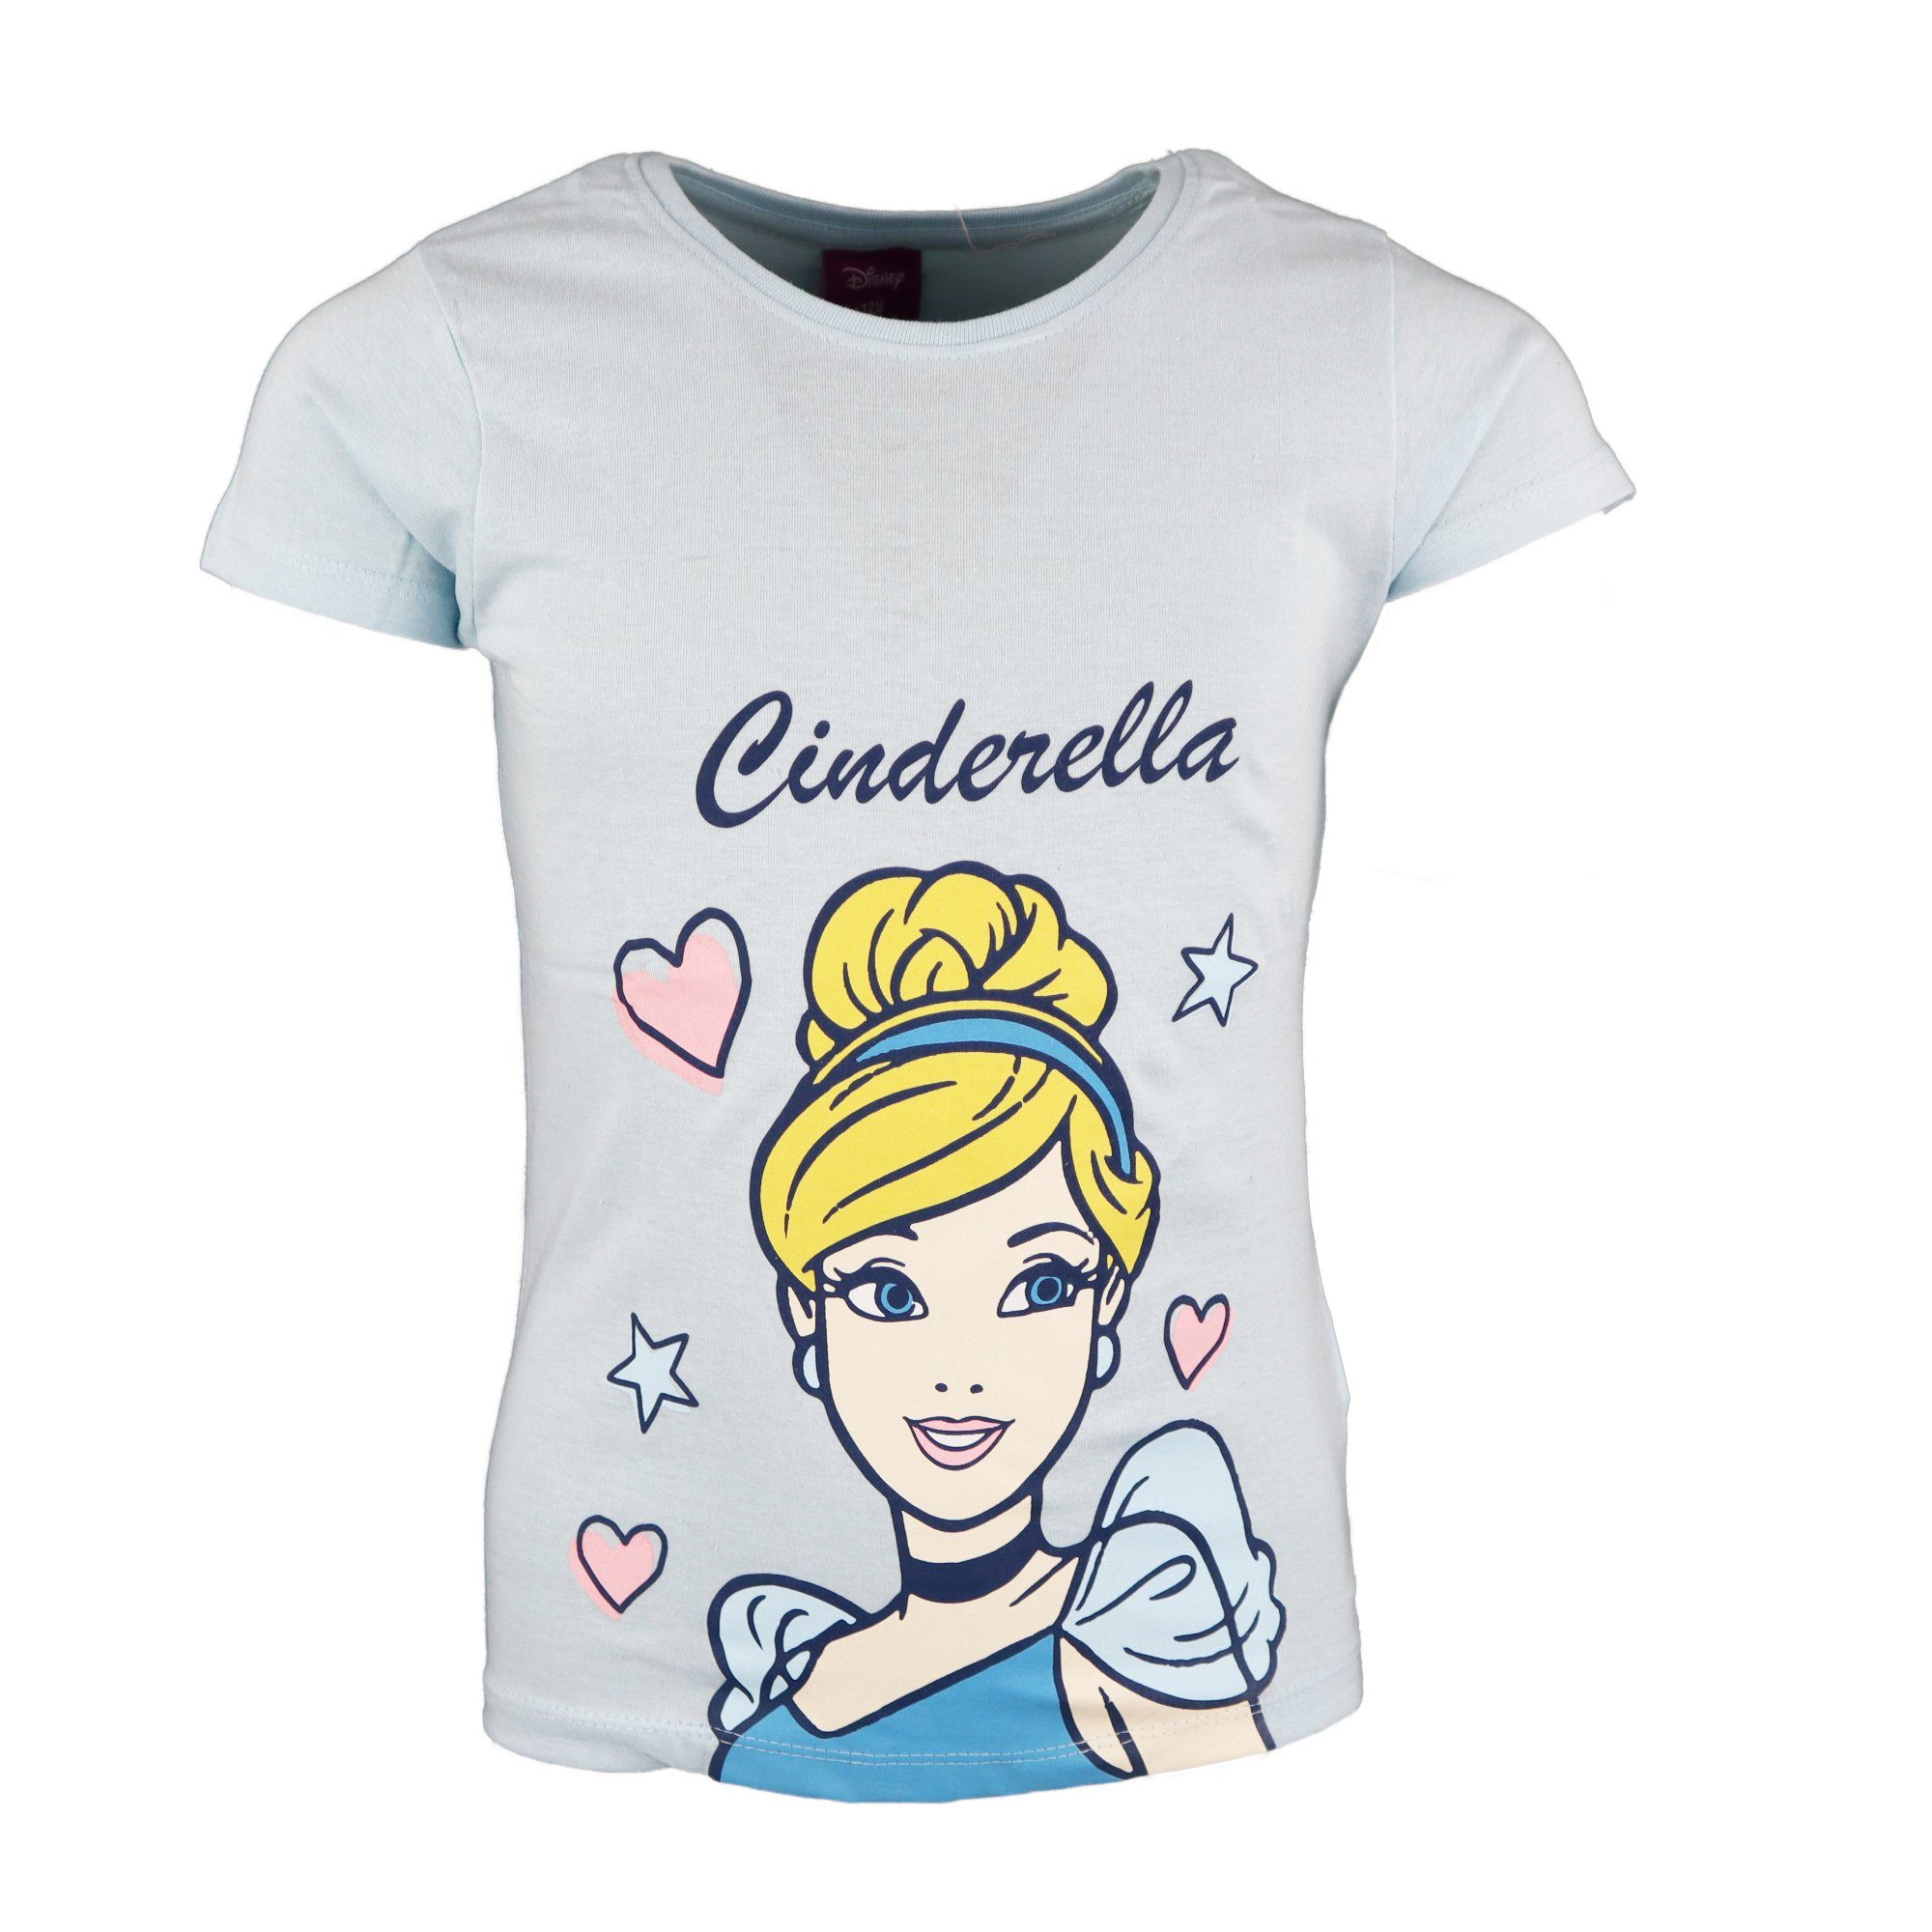 Baumwolle Hellblau Shirt 98 Cinderella Disney Mädchen 128, Kinder T-Shirt Princess bis Gr.